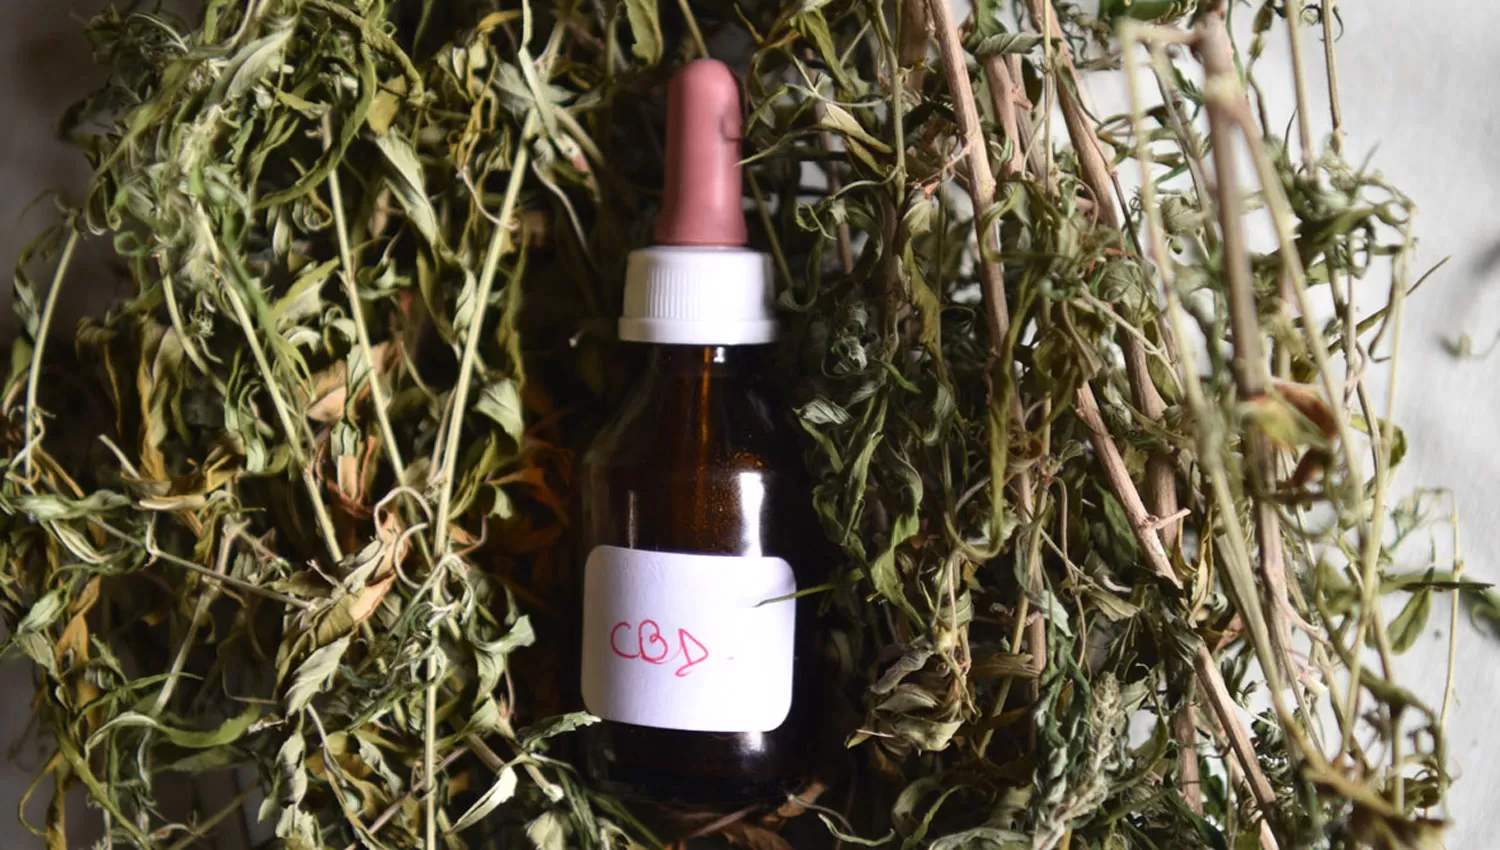 ACEITE. Uno de los usos medicinales de cannabis es a través del aceite con CBD.